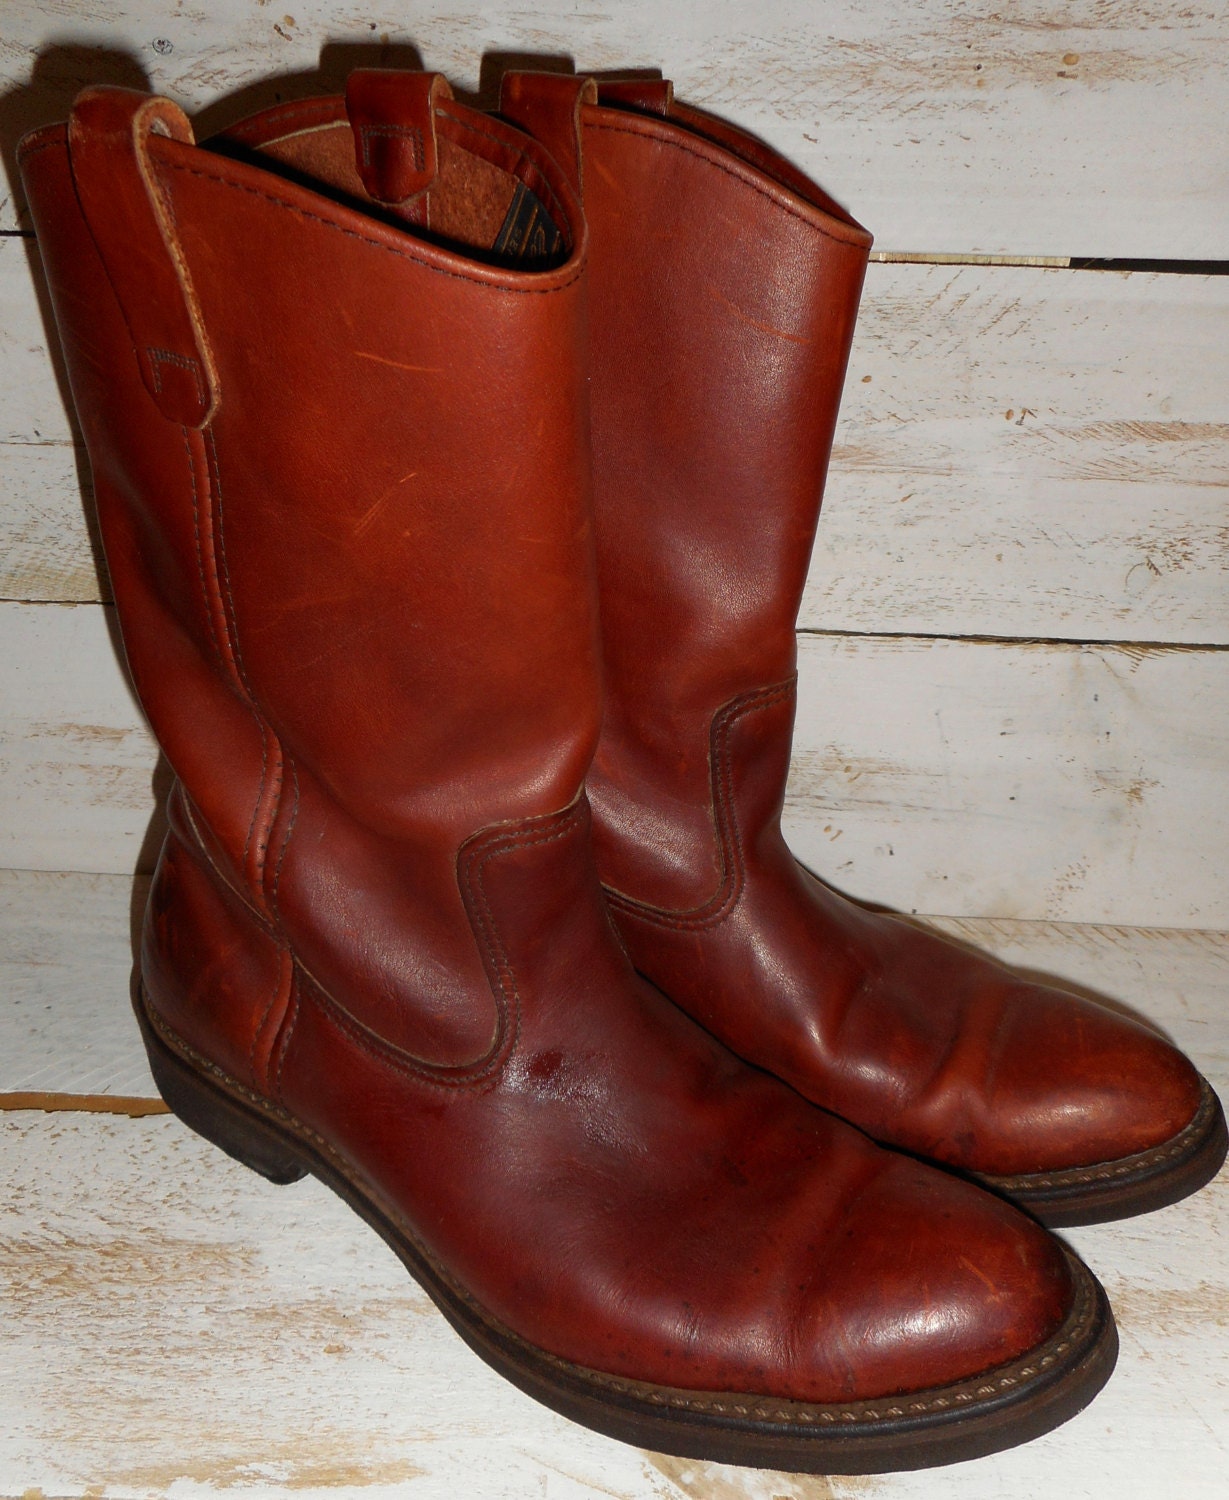 Vintage Eddie Bauer Riding/Cowboy Boots Men's Leather